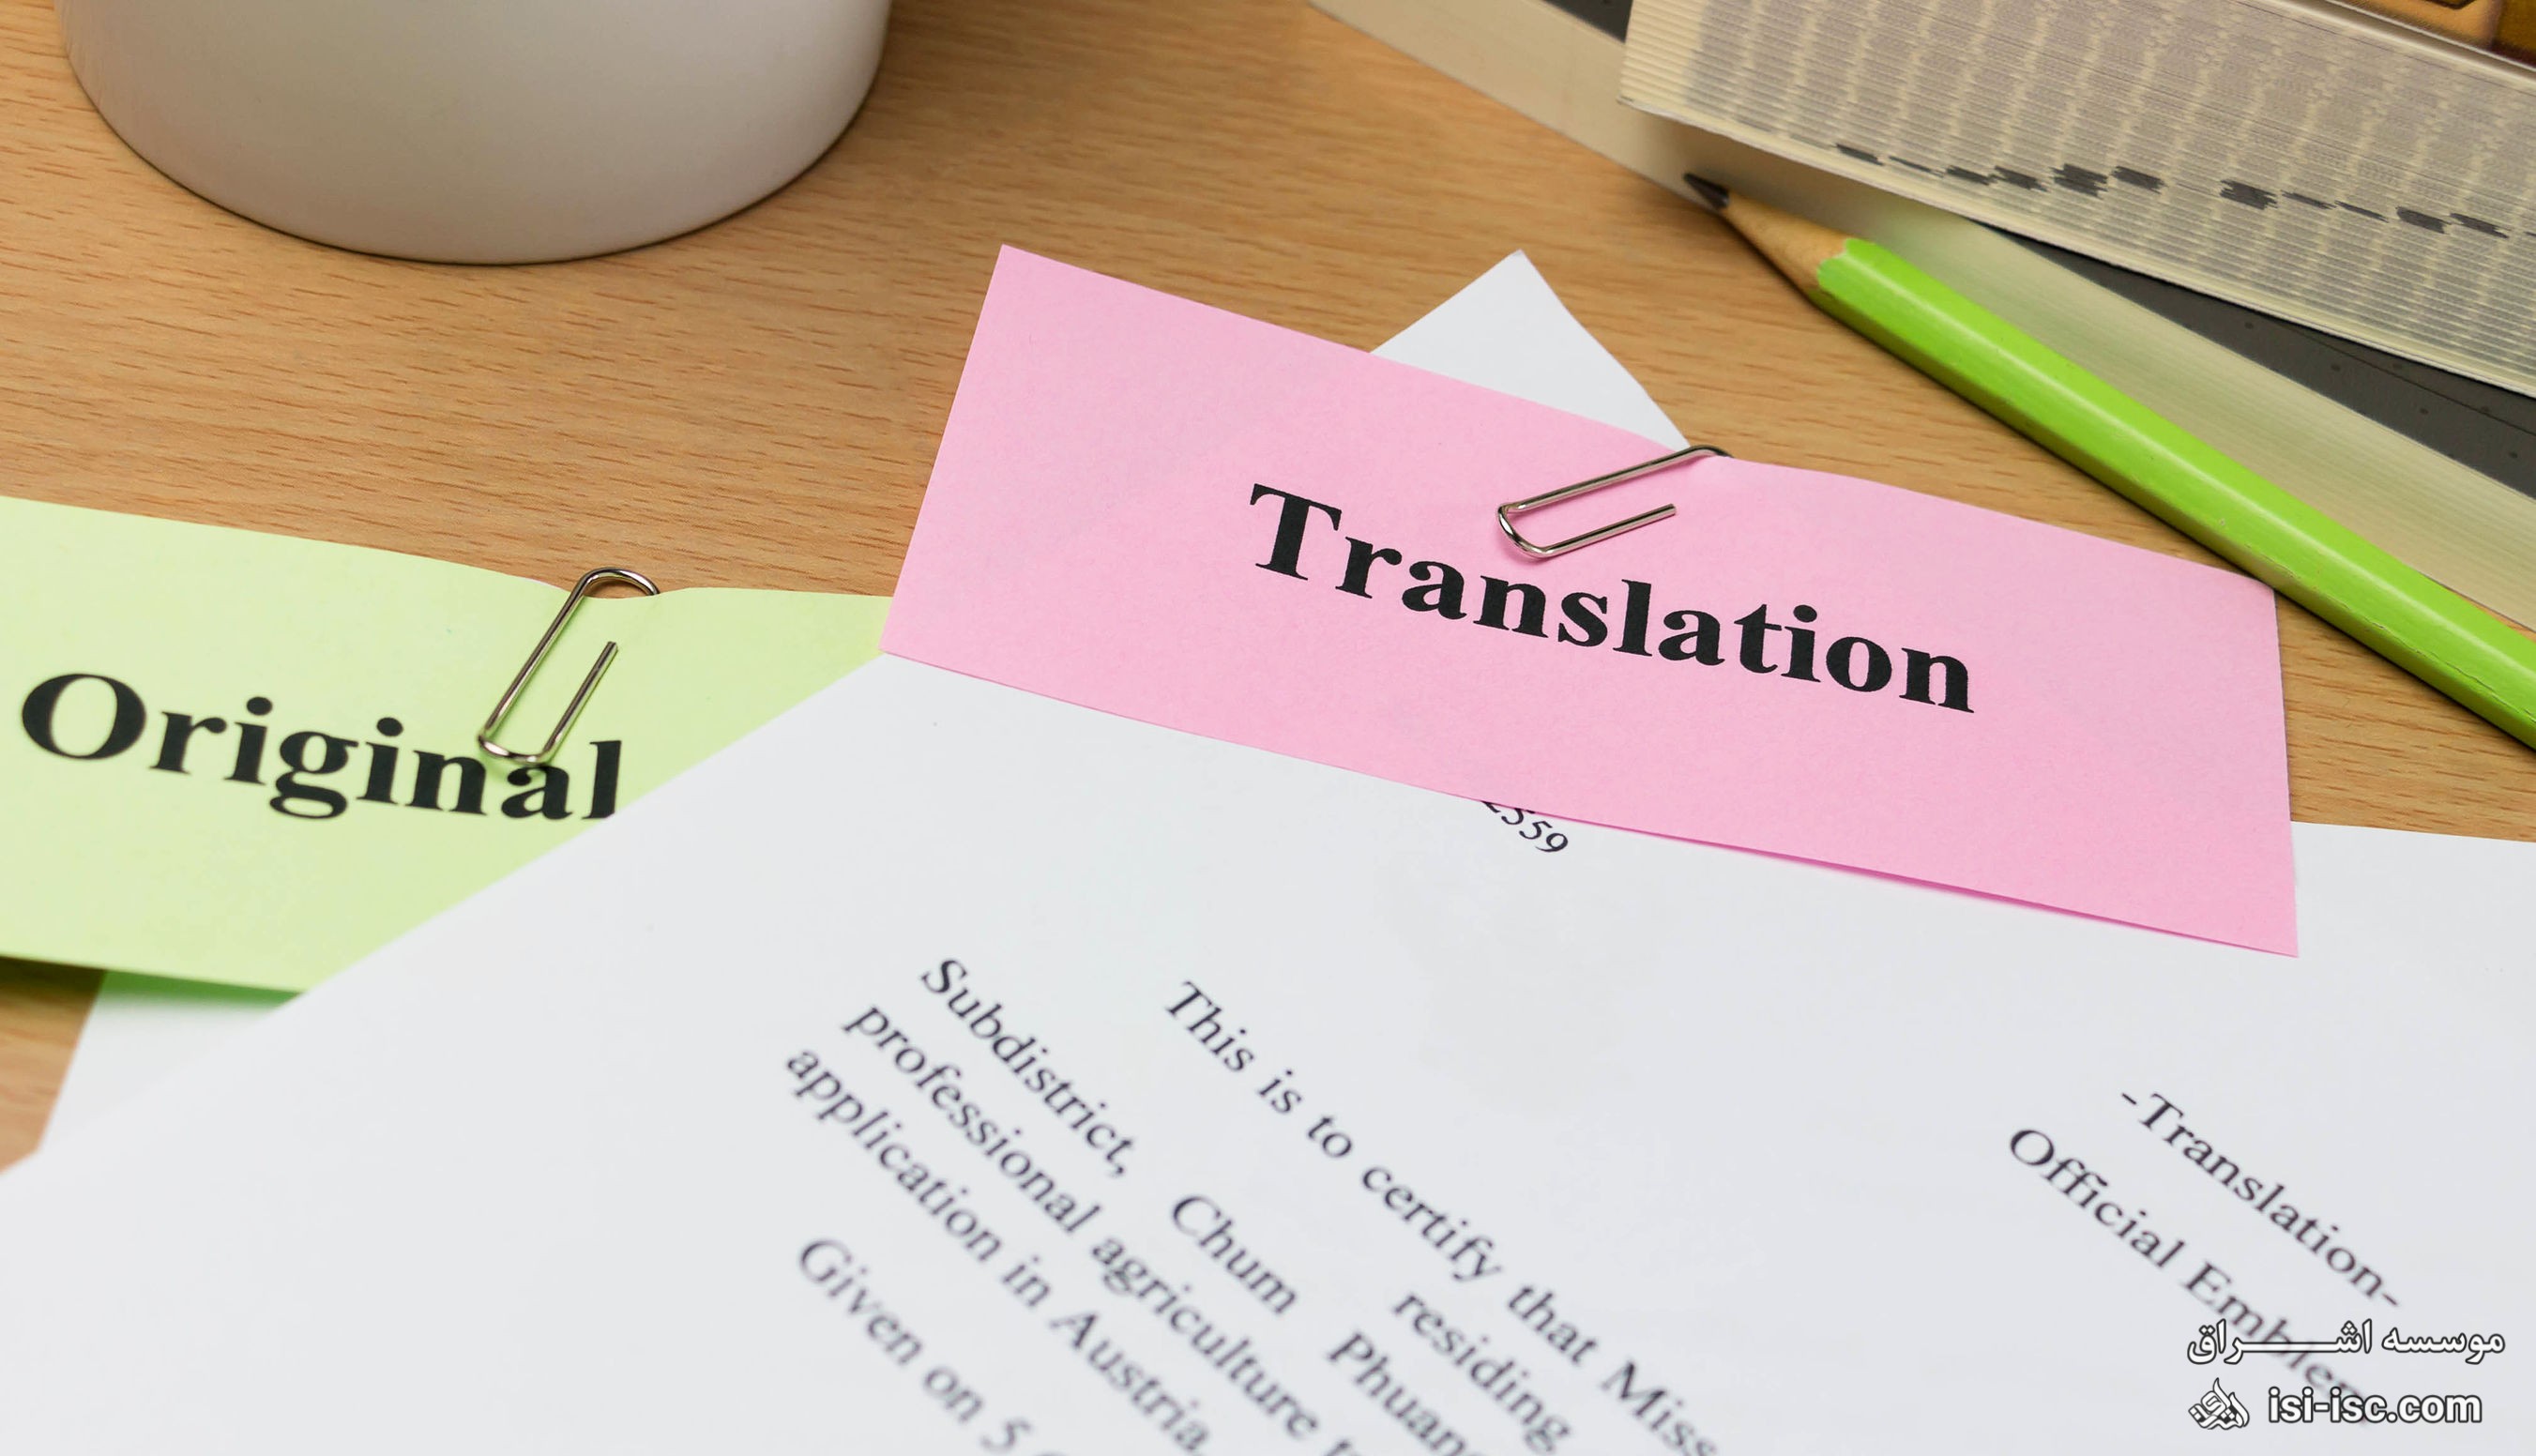 آیا به دنبال جایی برای ترجمه مدارک خود با هزینه کم هستید؟